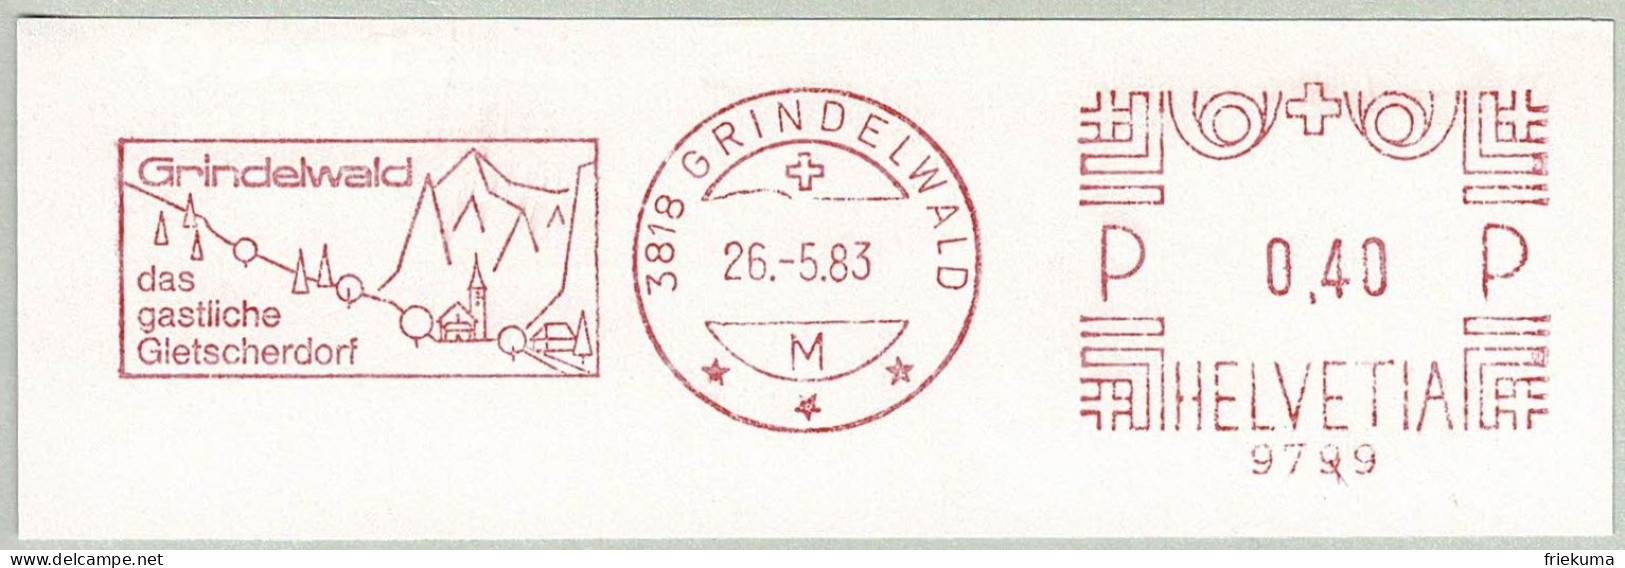 Schweiz / Helvetia 1983, Freistempel / EMA / Meterstamp Grindelwald, Gletscherdorf, Glacier - Frankiermaschinen (FraMA)